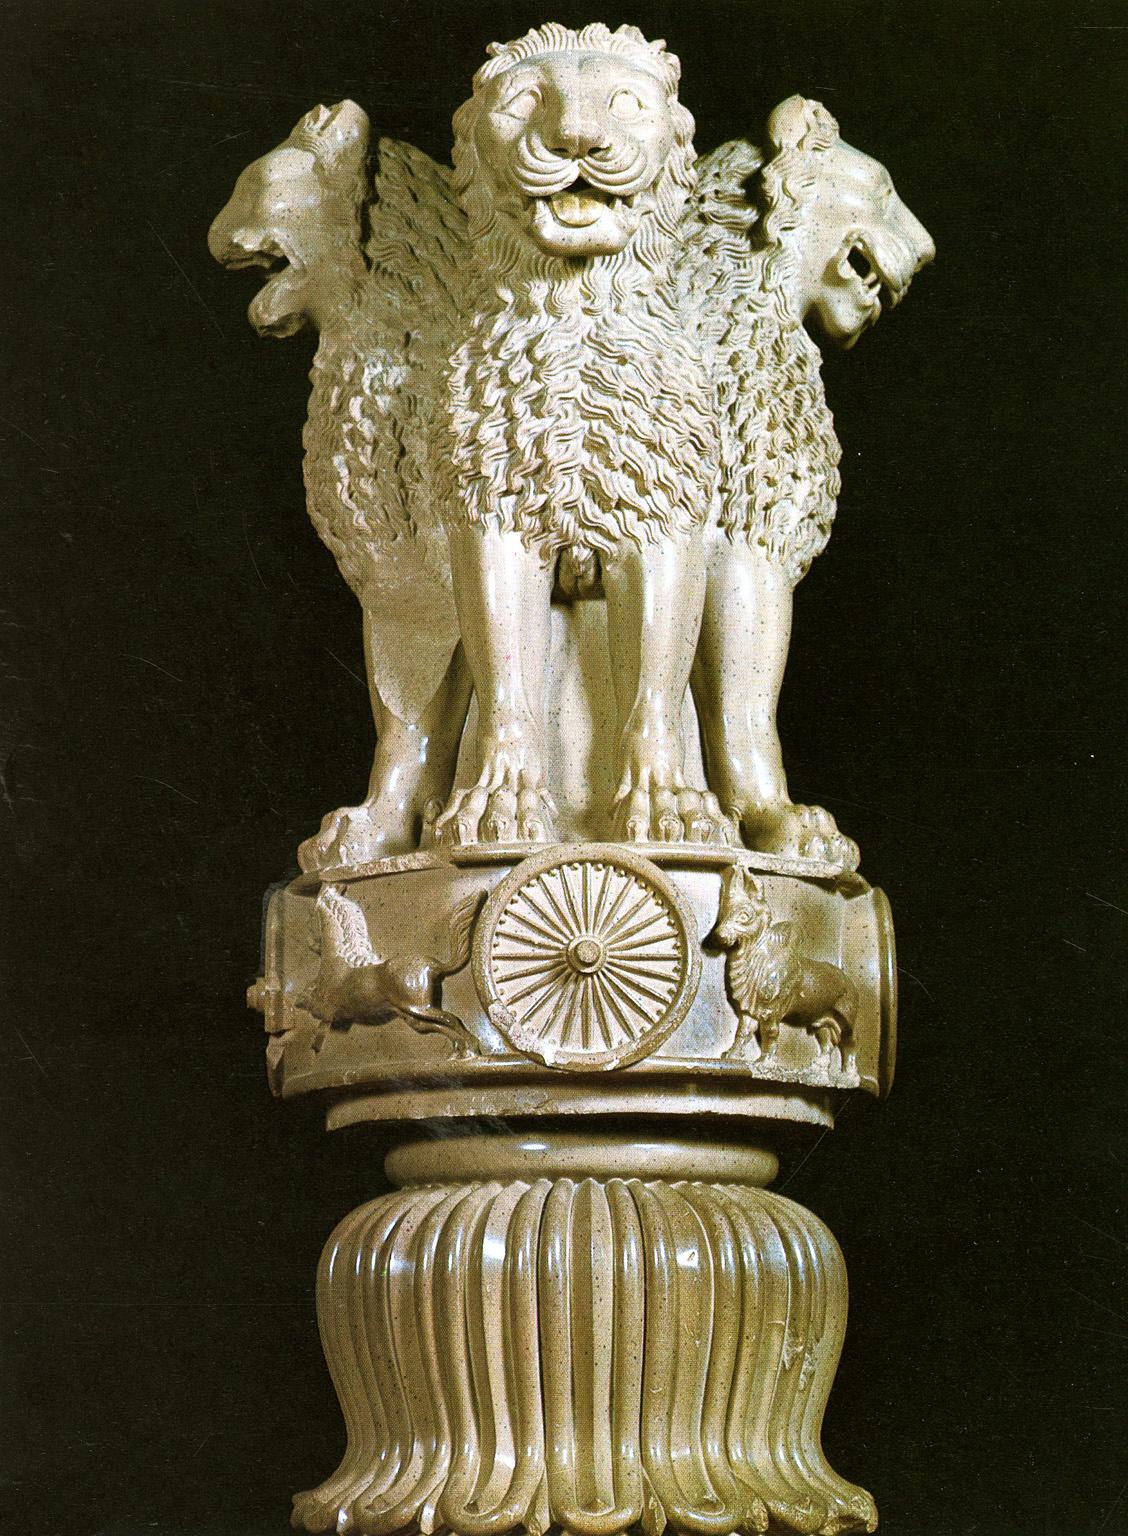 Best Asoka pillar image. asoka pillar, ashoka pillar, ancient india